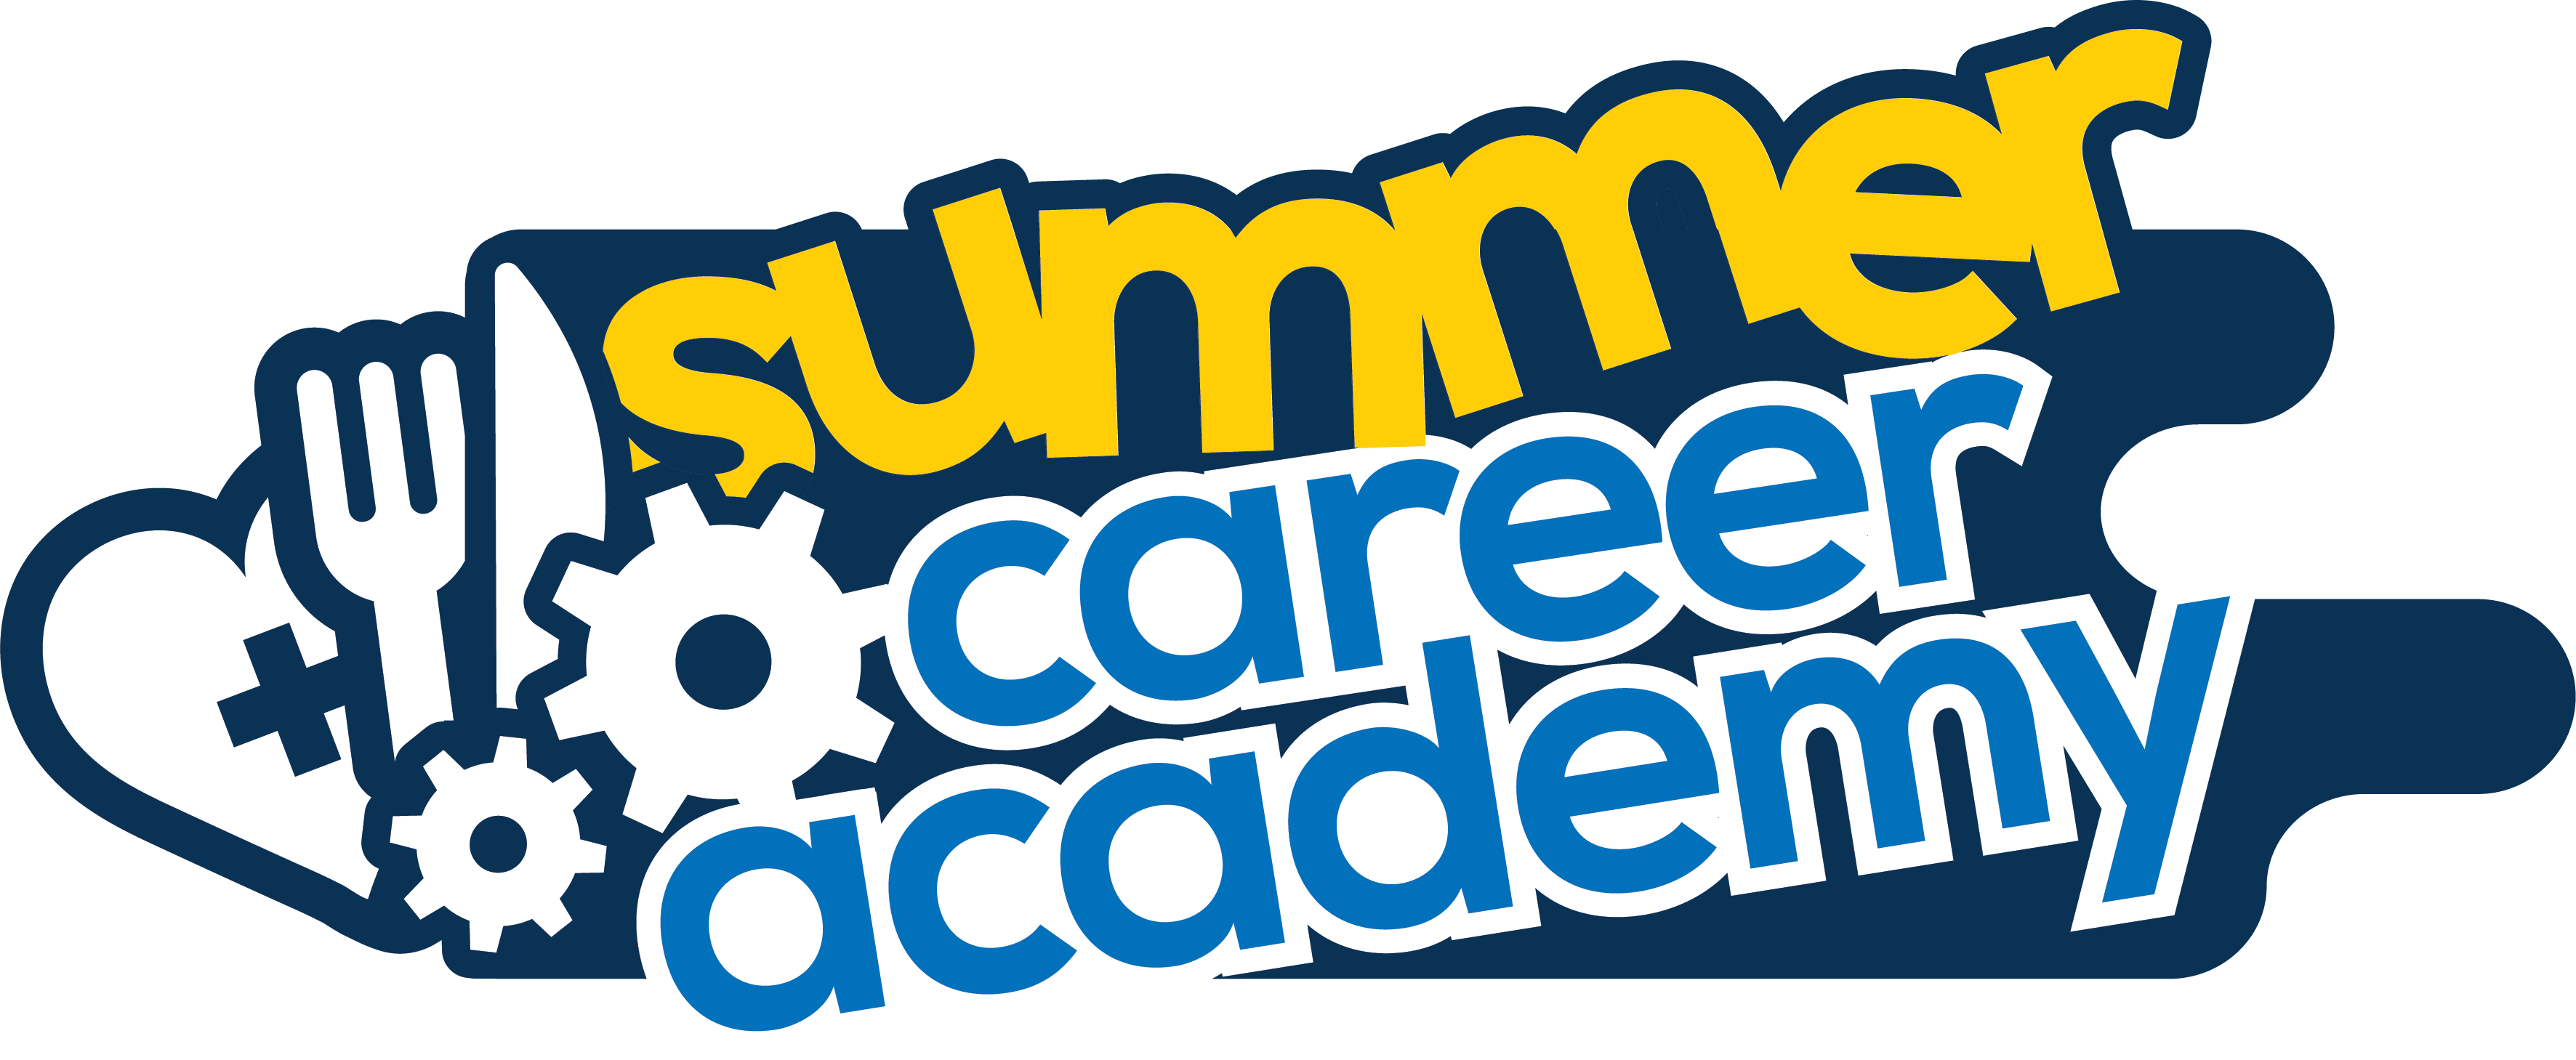 Summer Career Academy - Academy (3544x1459)